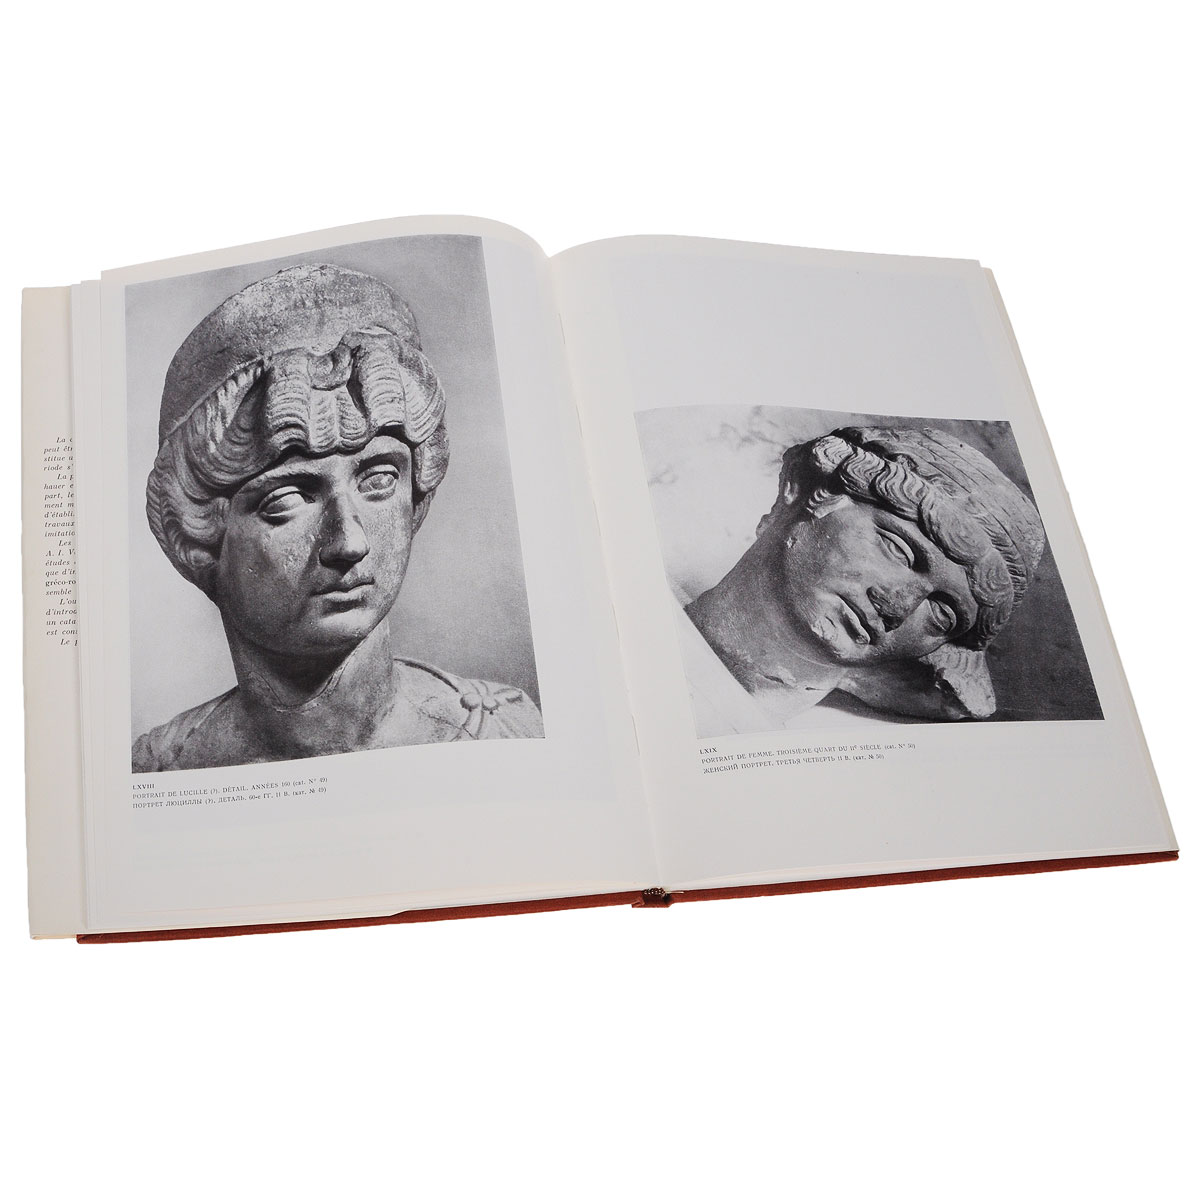 Римский портрет. Коллекция государственного Эрмитажа происходит неумолимо приближаясь